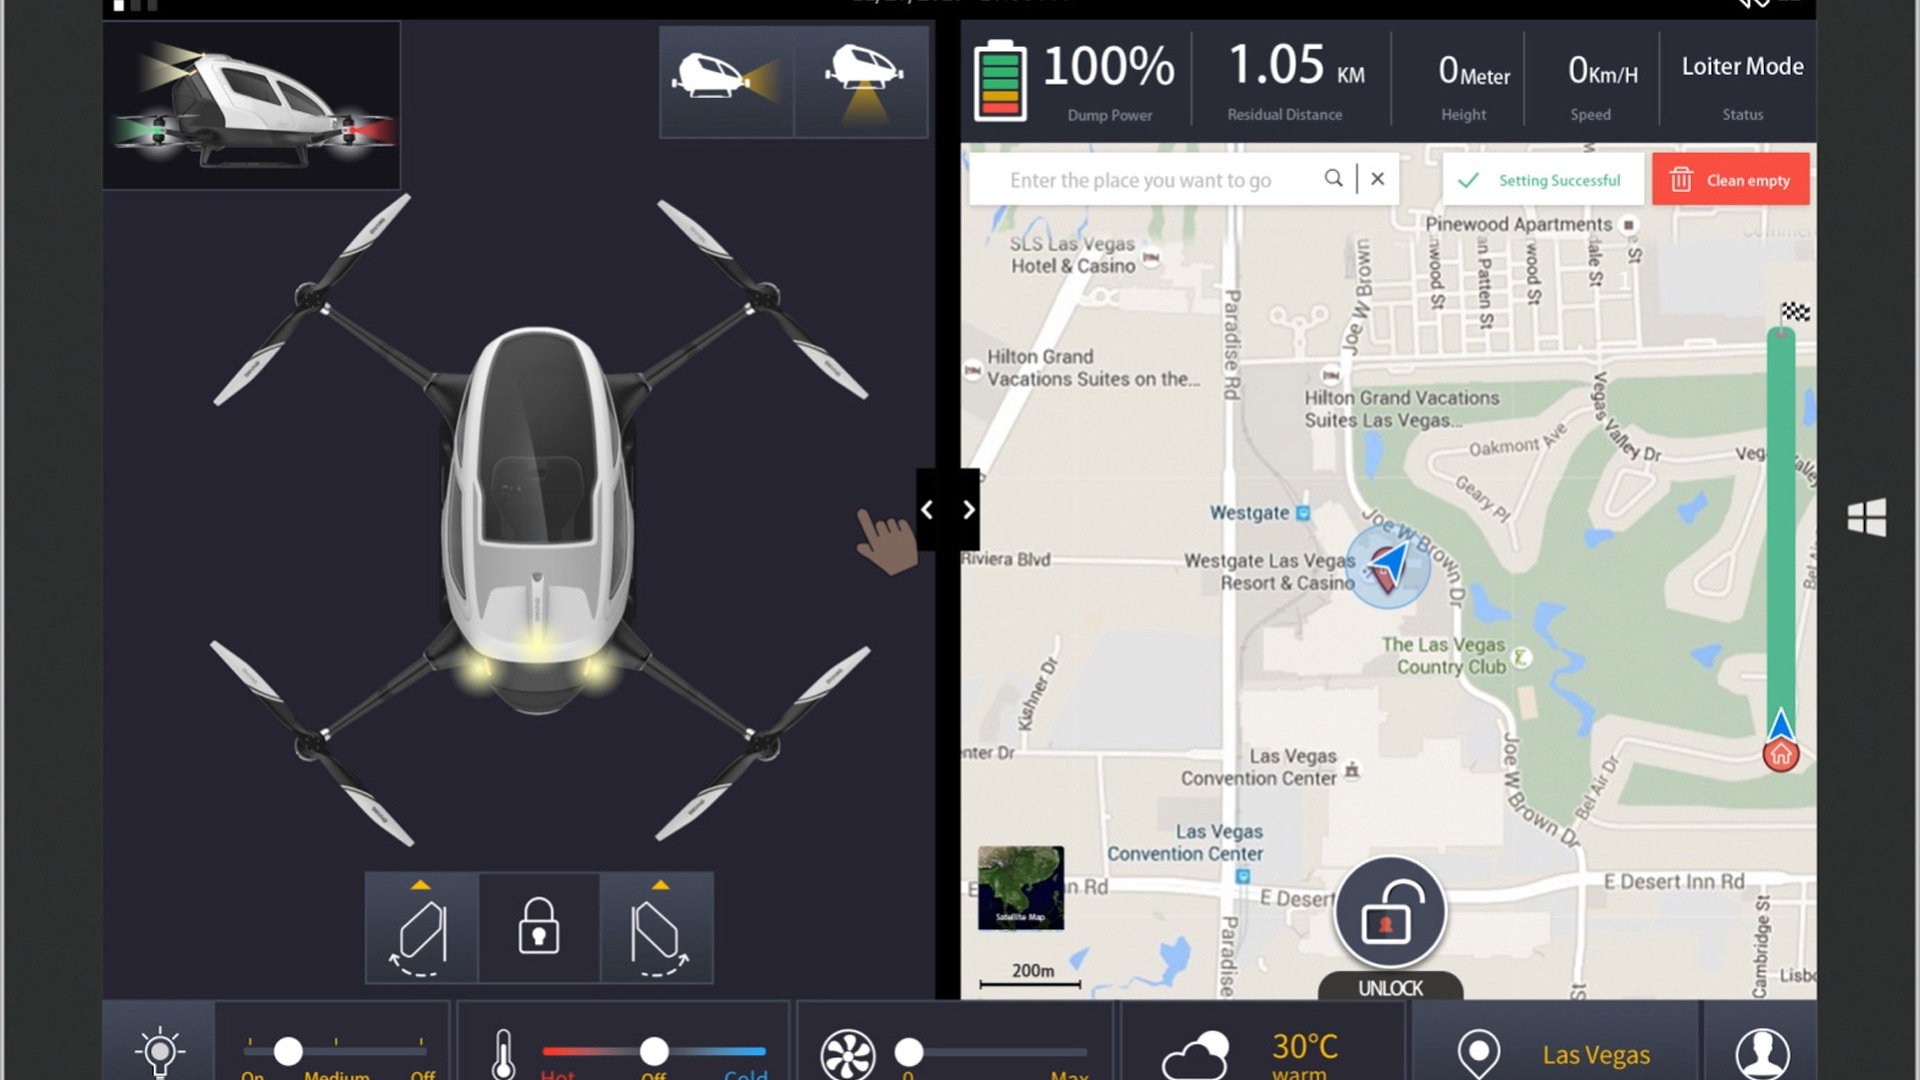 Ehang 184 autonomous passenger drone concept - 2016 Consumer Electronics Show